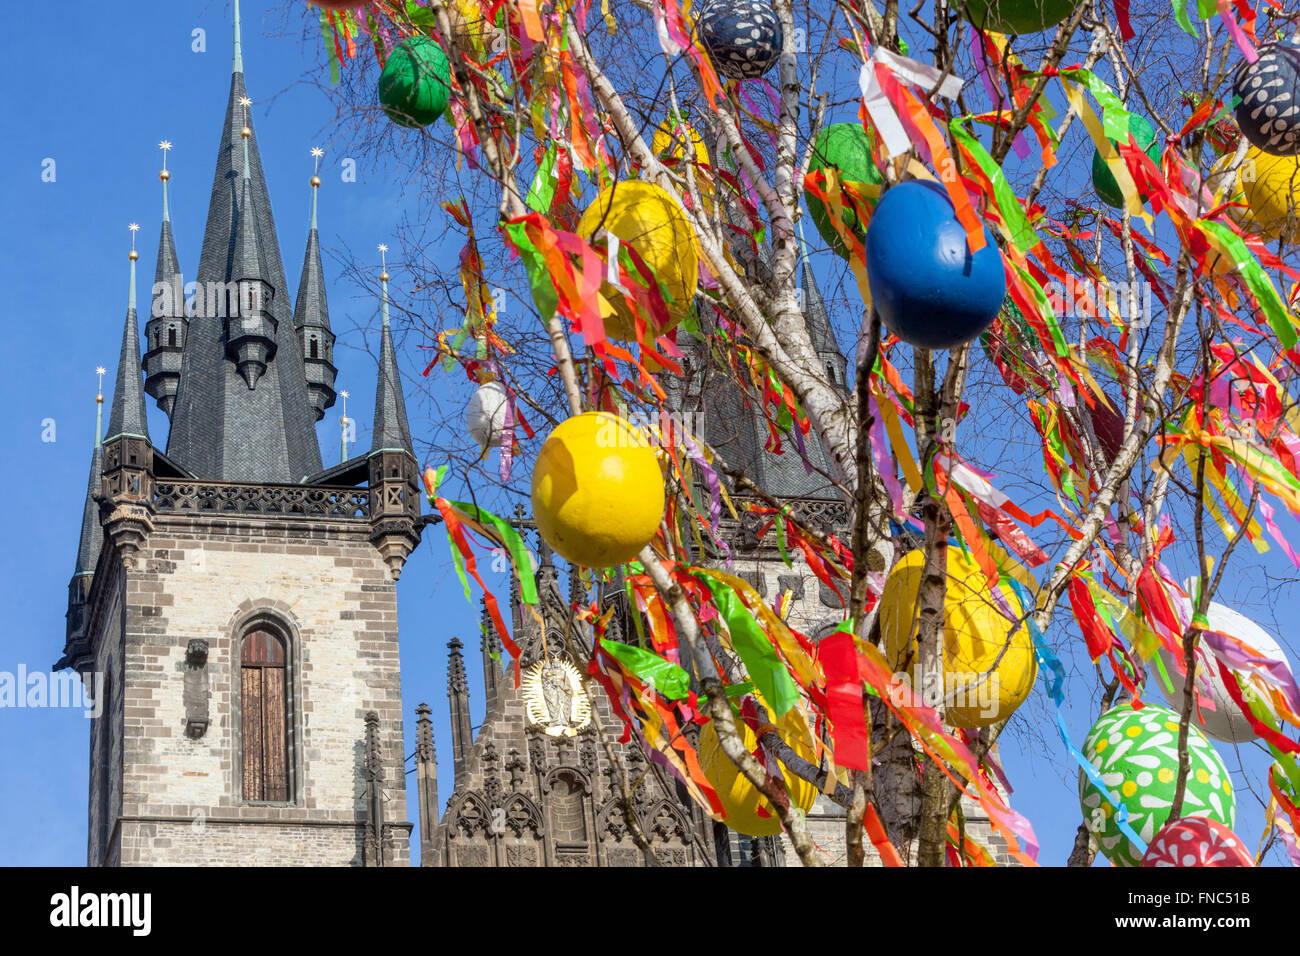 Böhmische Ostereier hängen an Ästen bunte Eier traditionelles Symbol des Frühlings vor dem Tynkirche Altstädter Ring, Prag Tschechische Republik Stockfoto